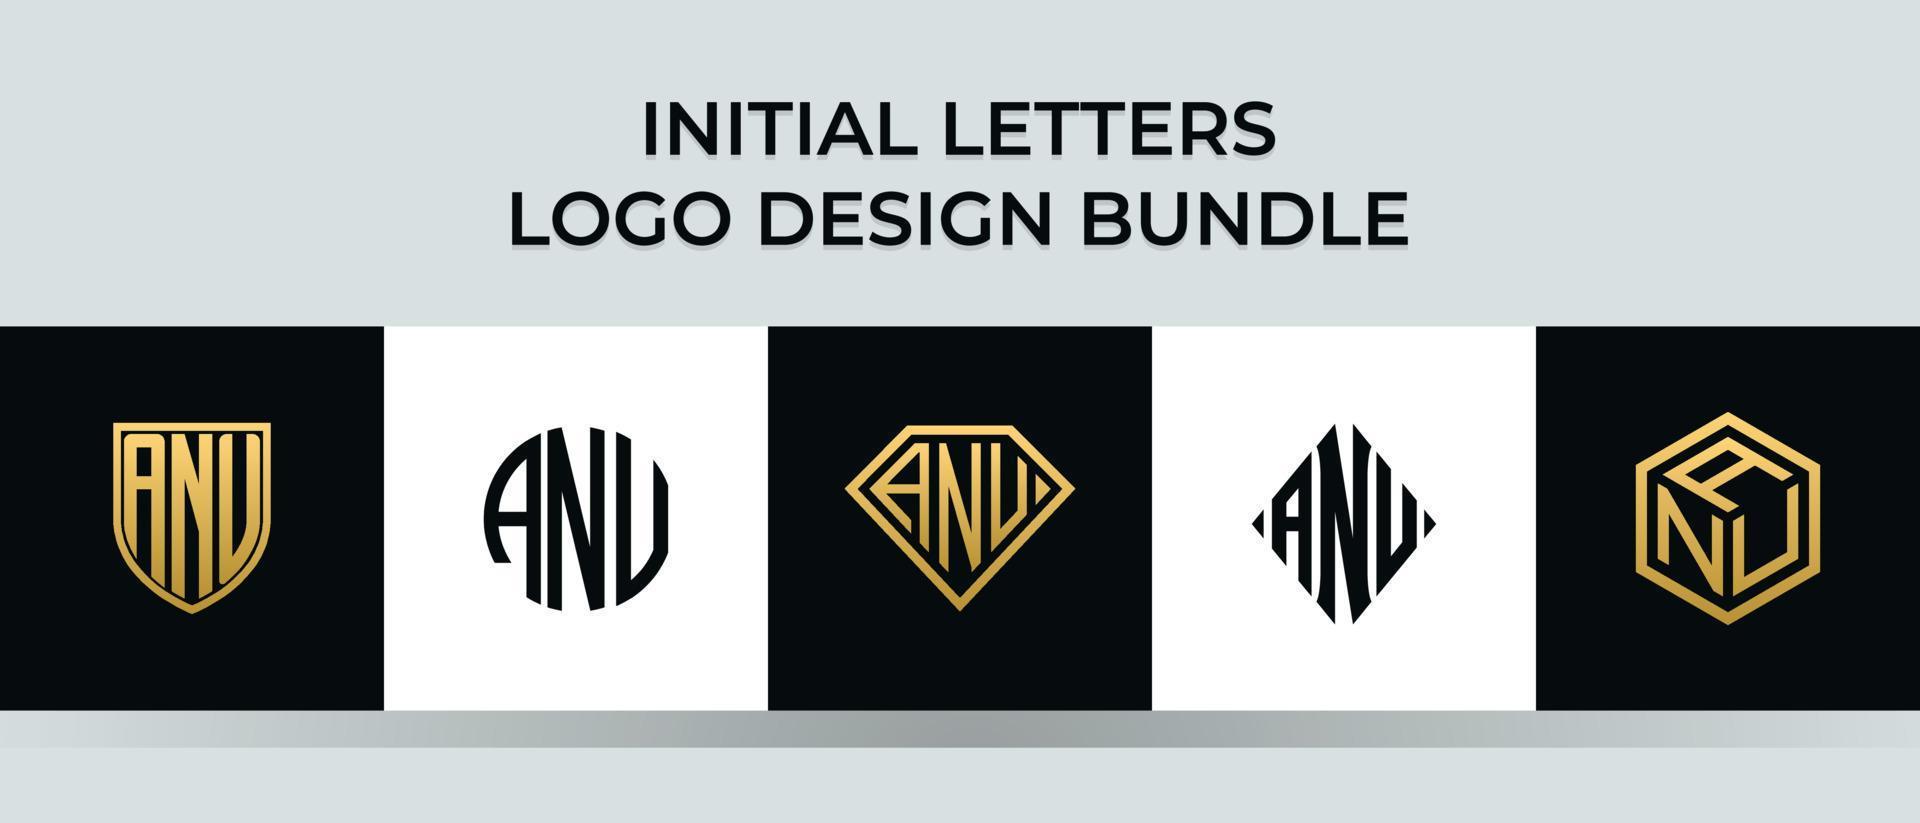 letras iniciais anu logo designs pacote vetor